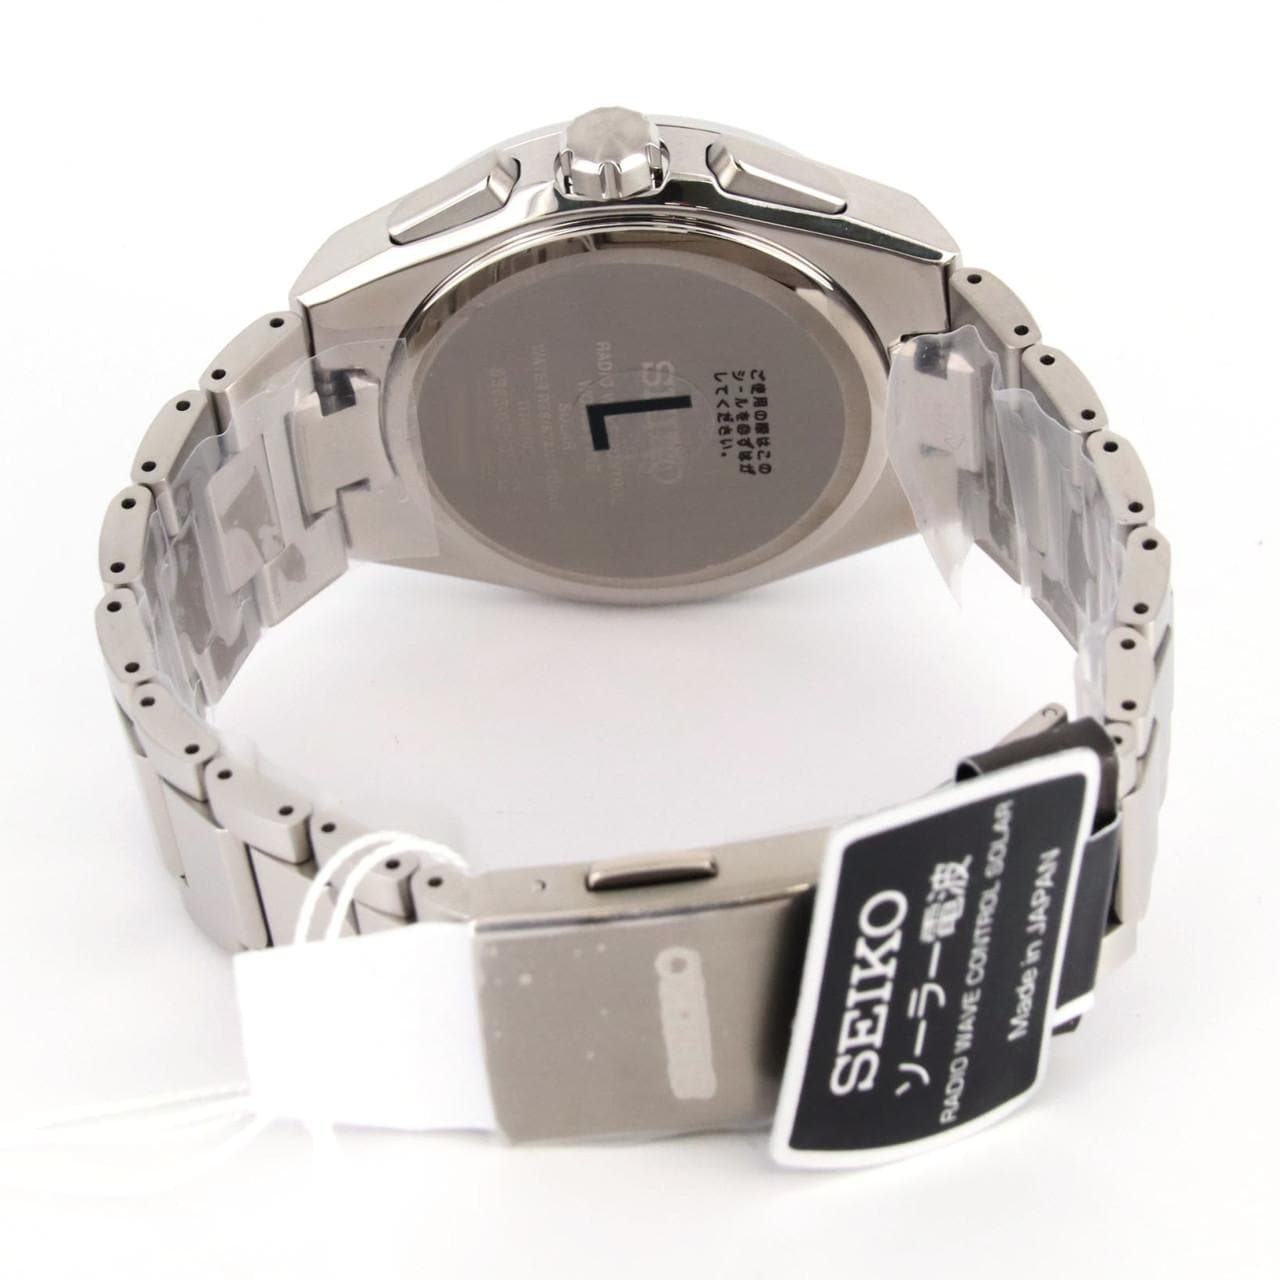 セイコー SEIKO ASTRON 腕時計 メンズ SBXY065 アストロン ネクスター ソーラー電波 8B63 電波ソーラー ブルーxシルバー アナログ表示